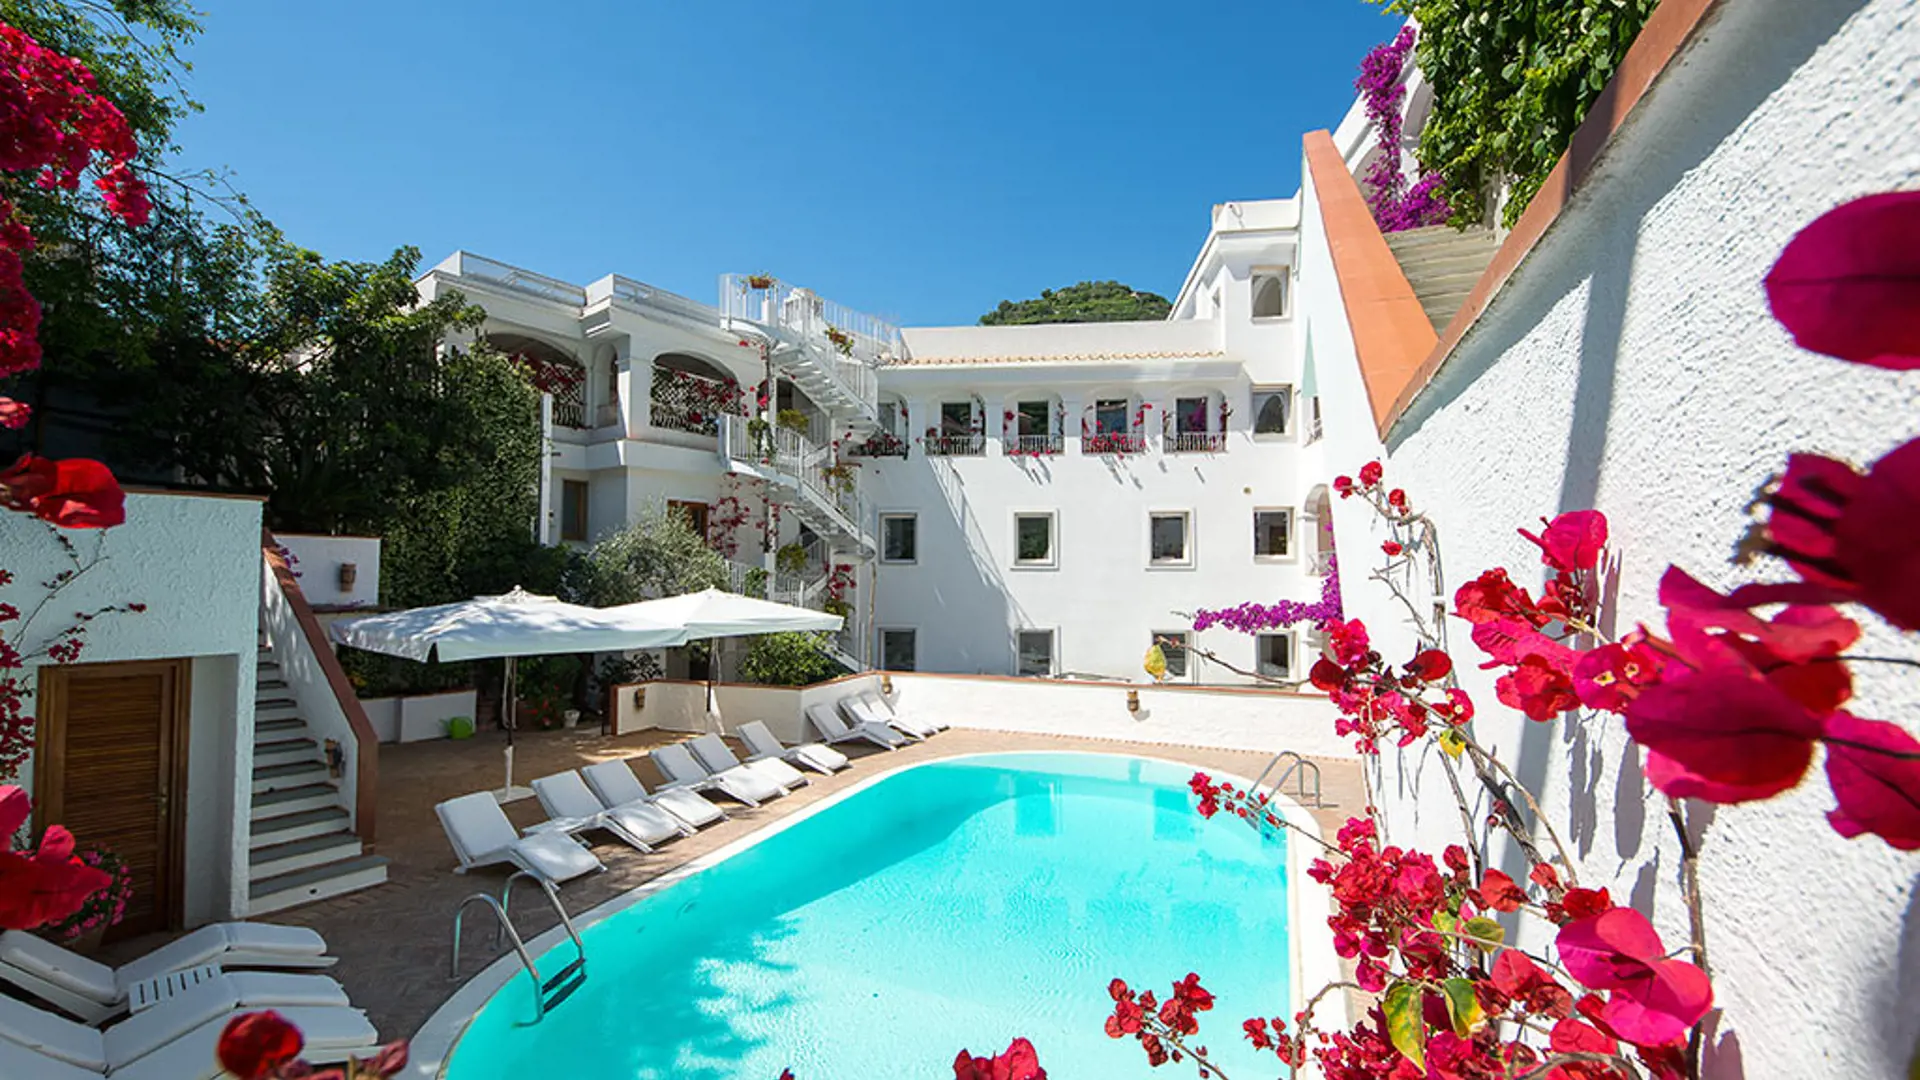 Hotel Villa Romana har et basseng og en flott beliggenhet midt i Minori